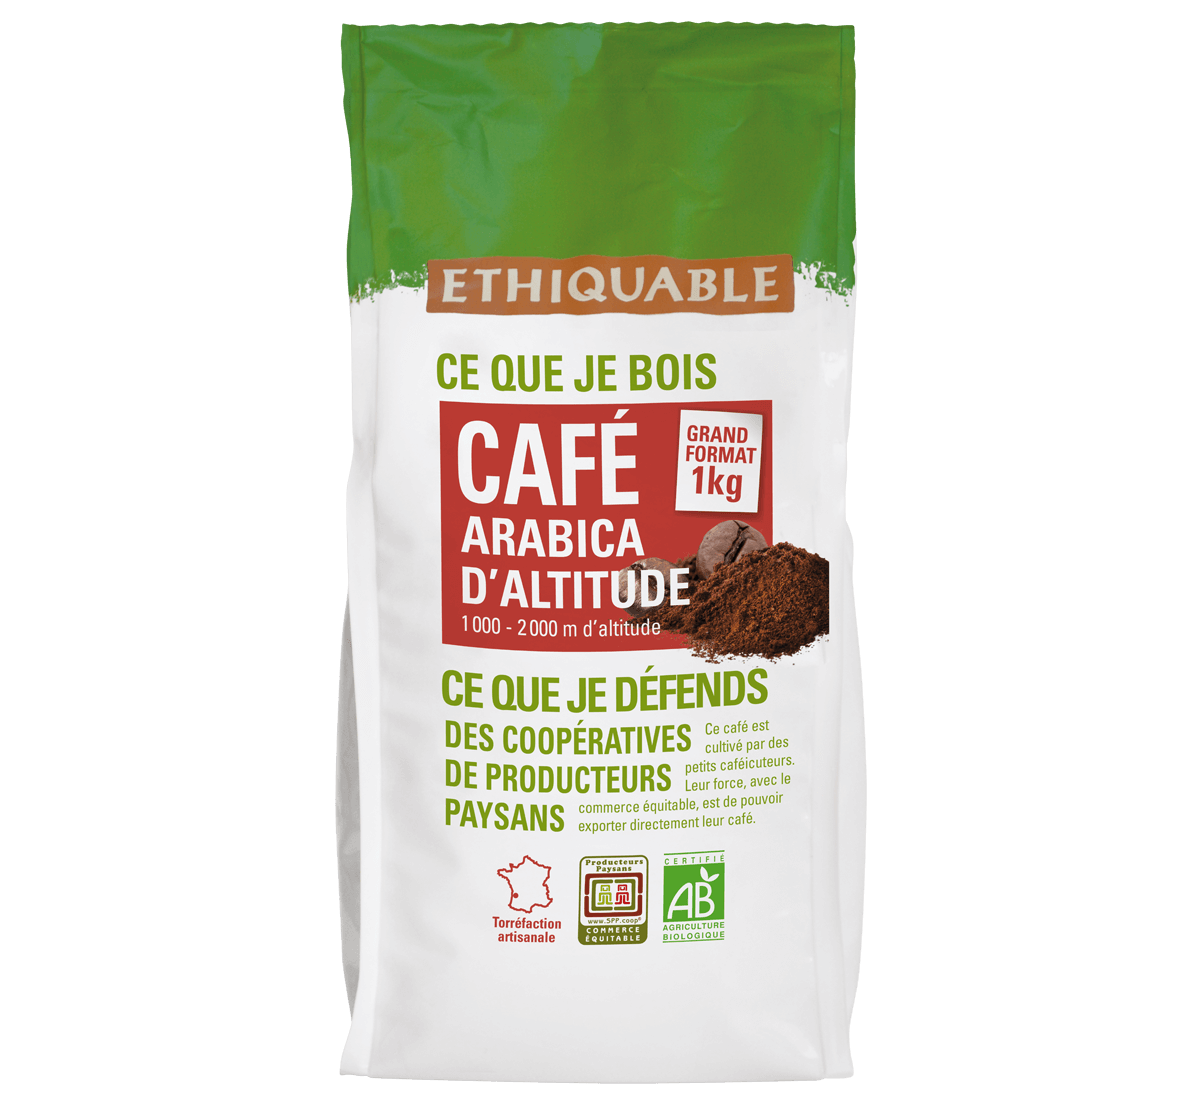 Ethiquable - Arabica en grains bio du Congo issu du Commerce Equitable1 kilo